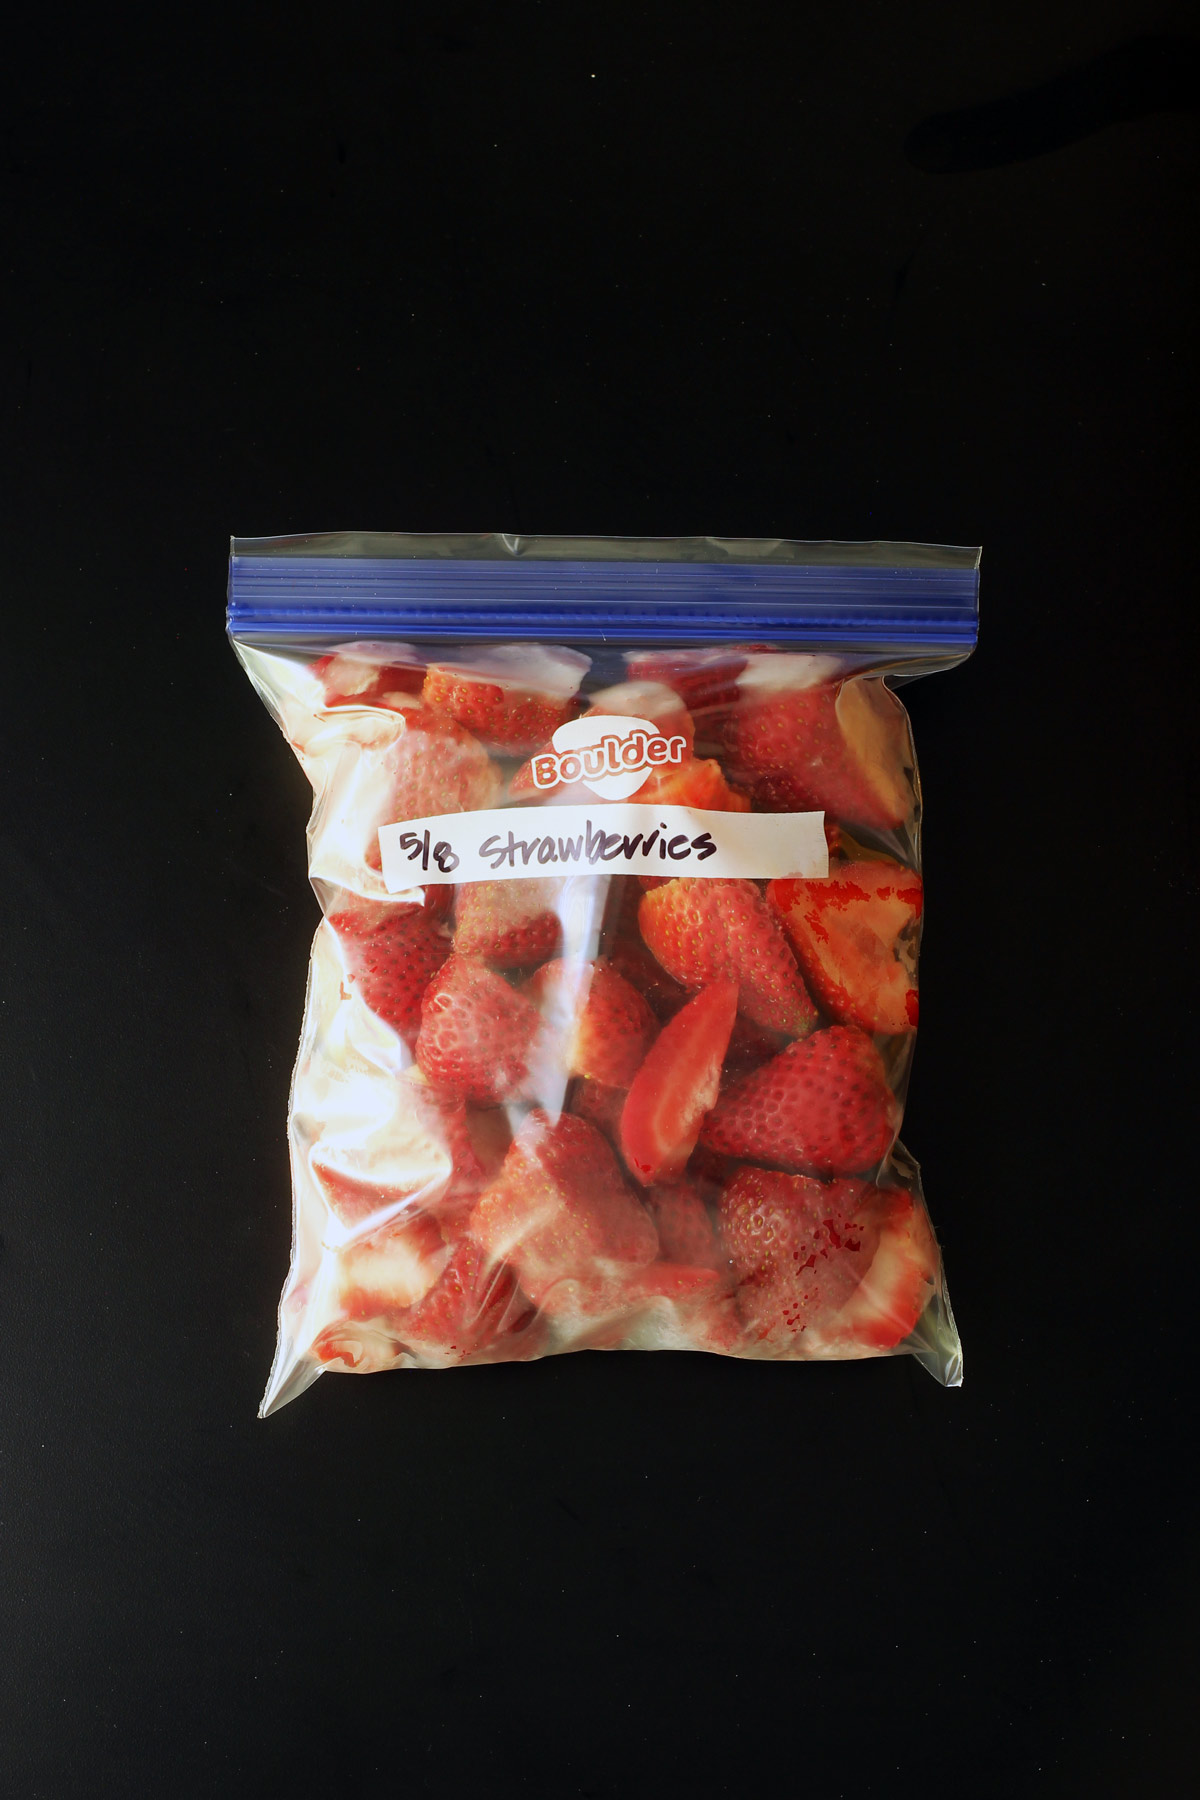 ziptop freezer bag full of frozen strawberries.